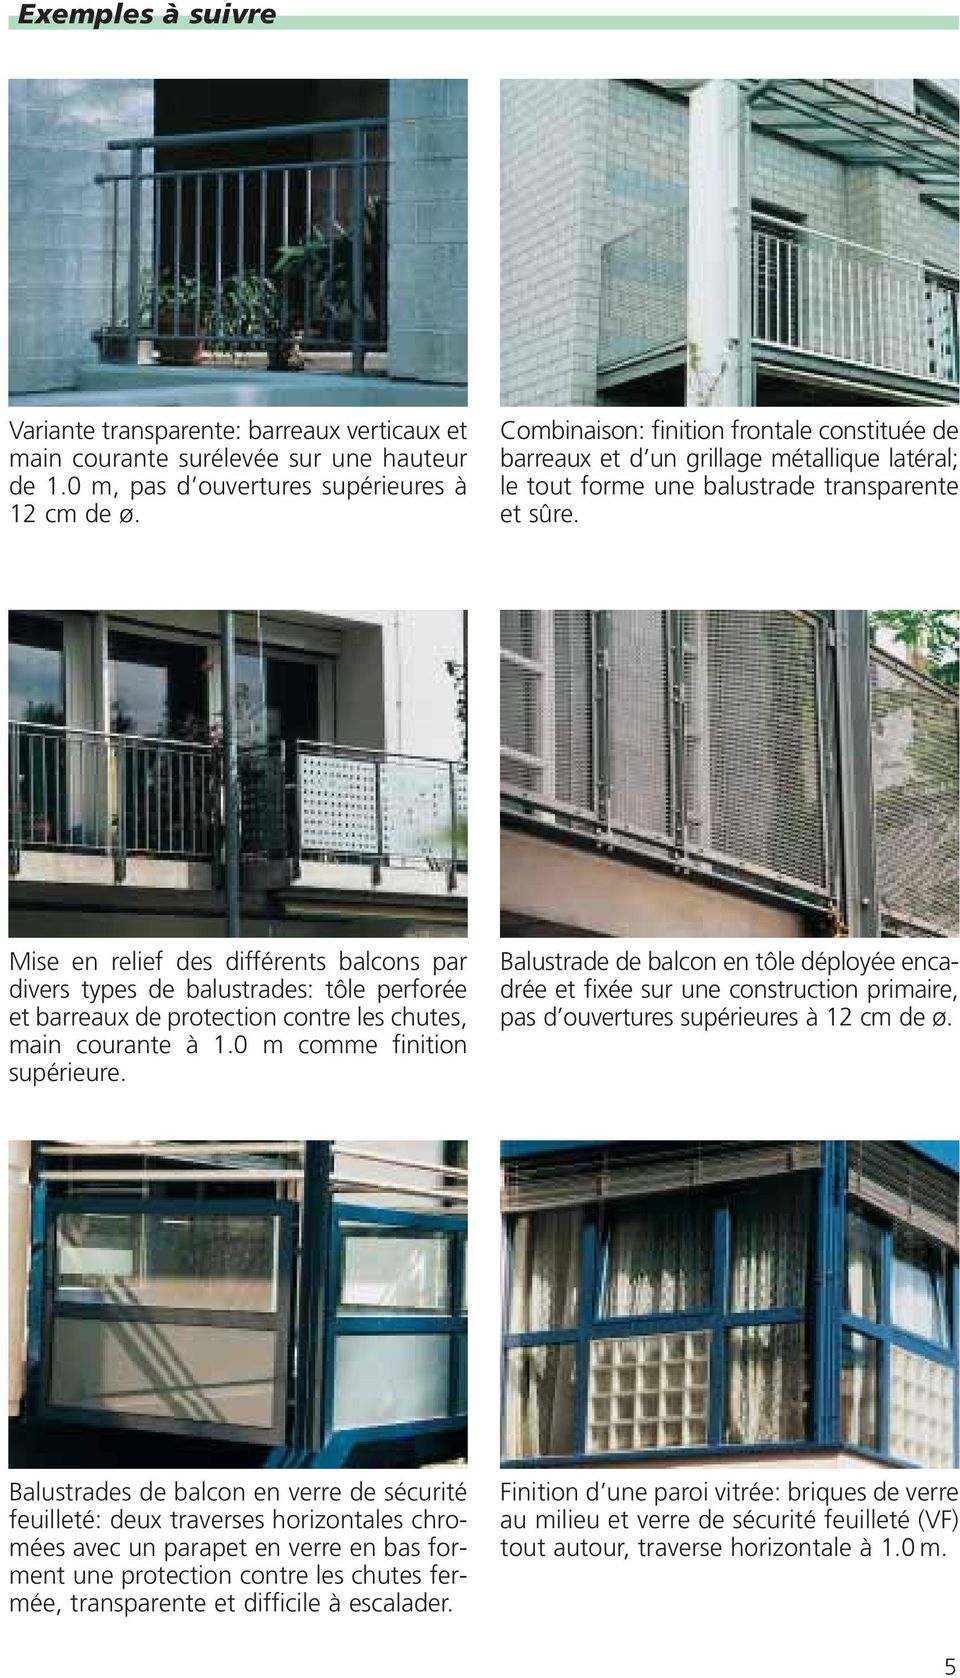 Mise en relief des différents balcons par divers types de balustrades: tôle perforée et barreaux de protection contre les chutes, main courante à 1.0 m comme finition supérieure.